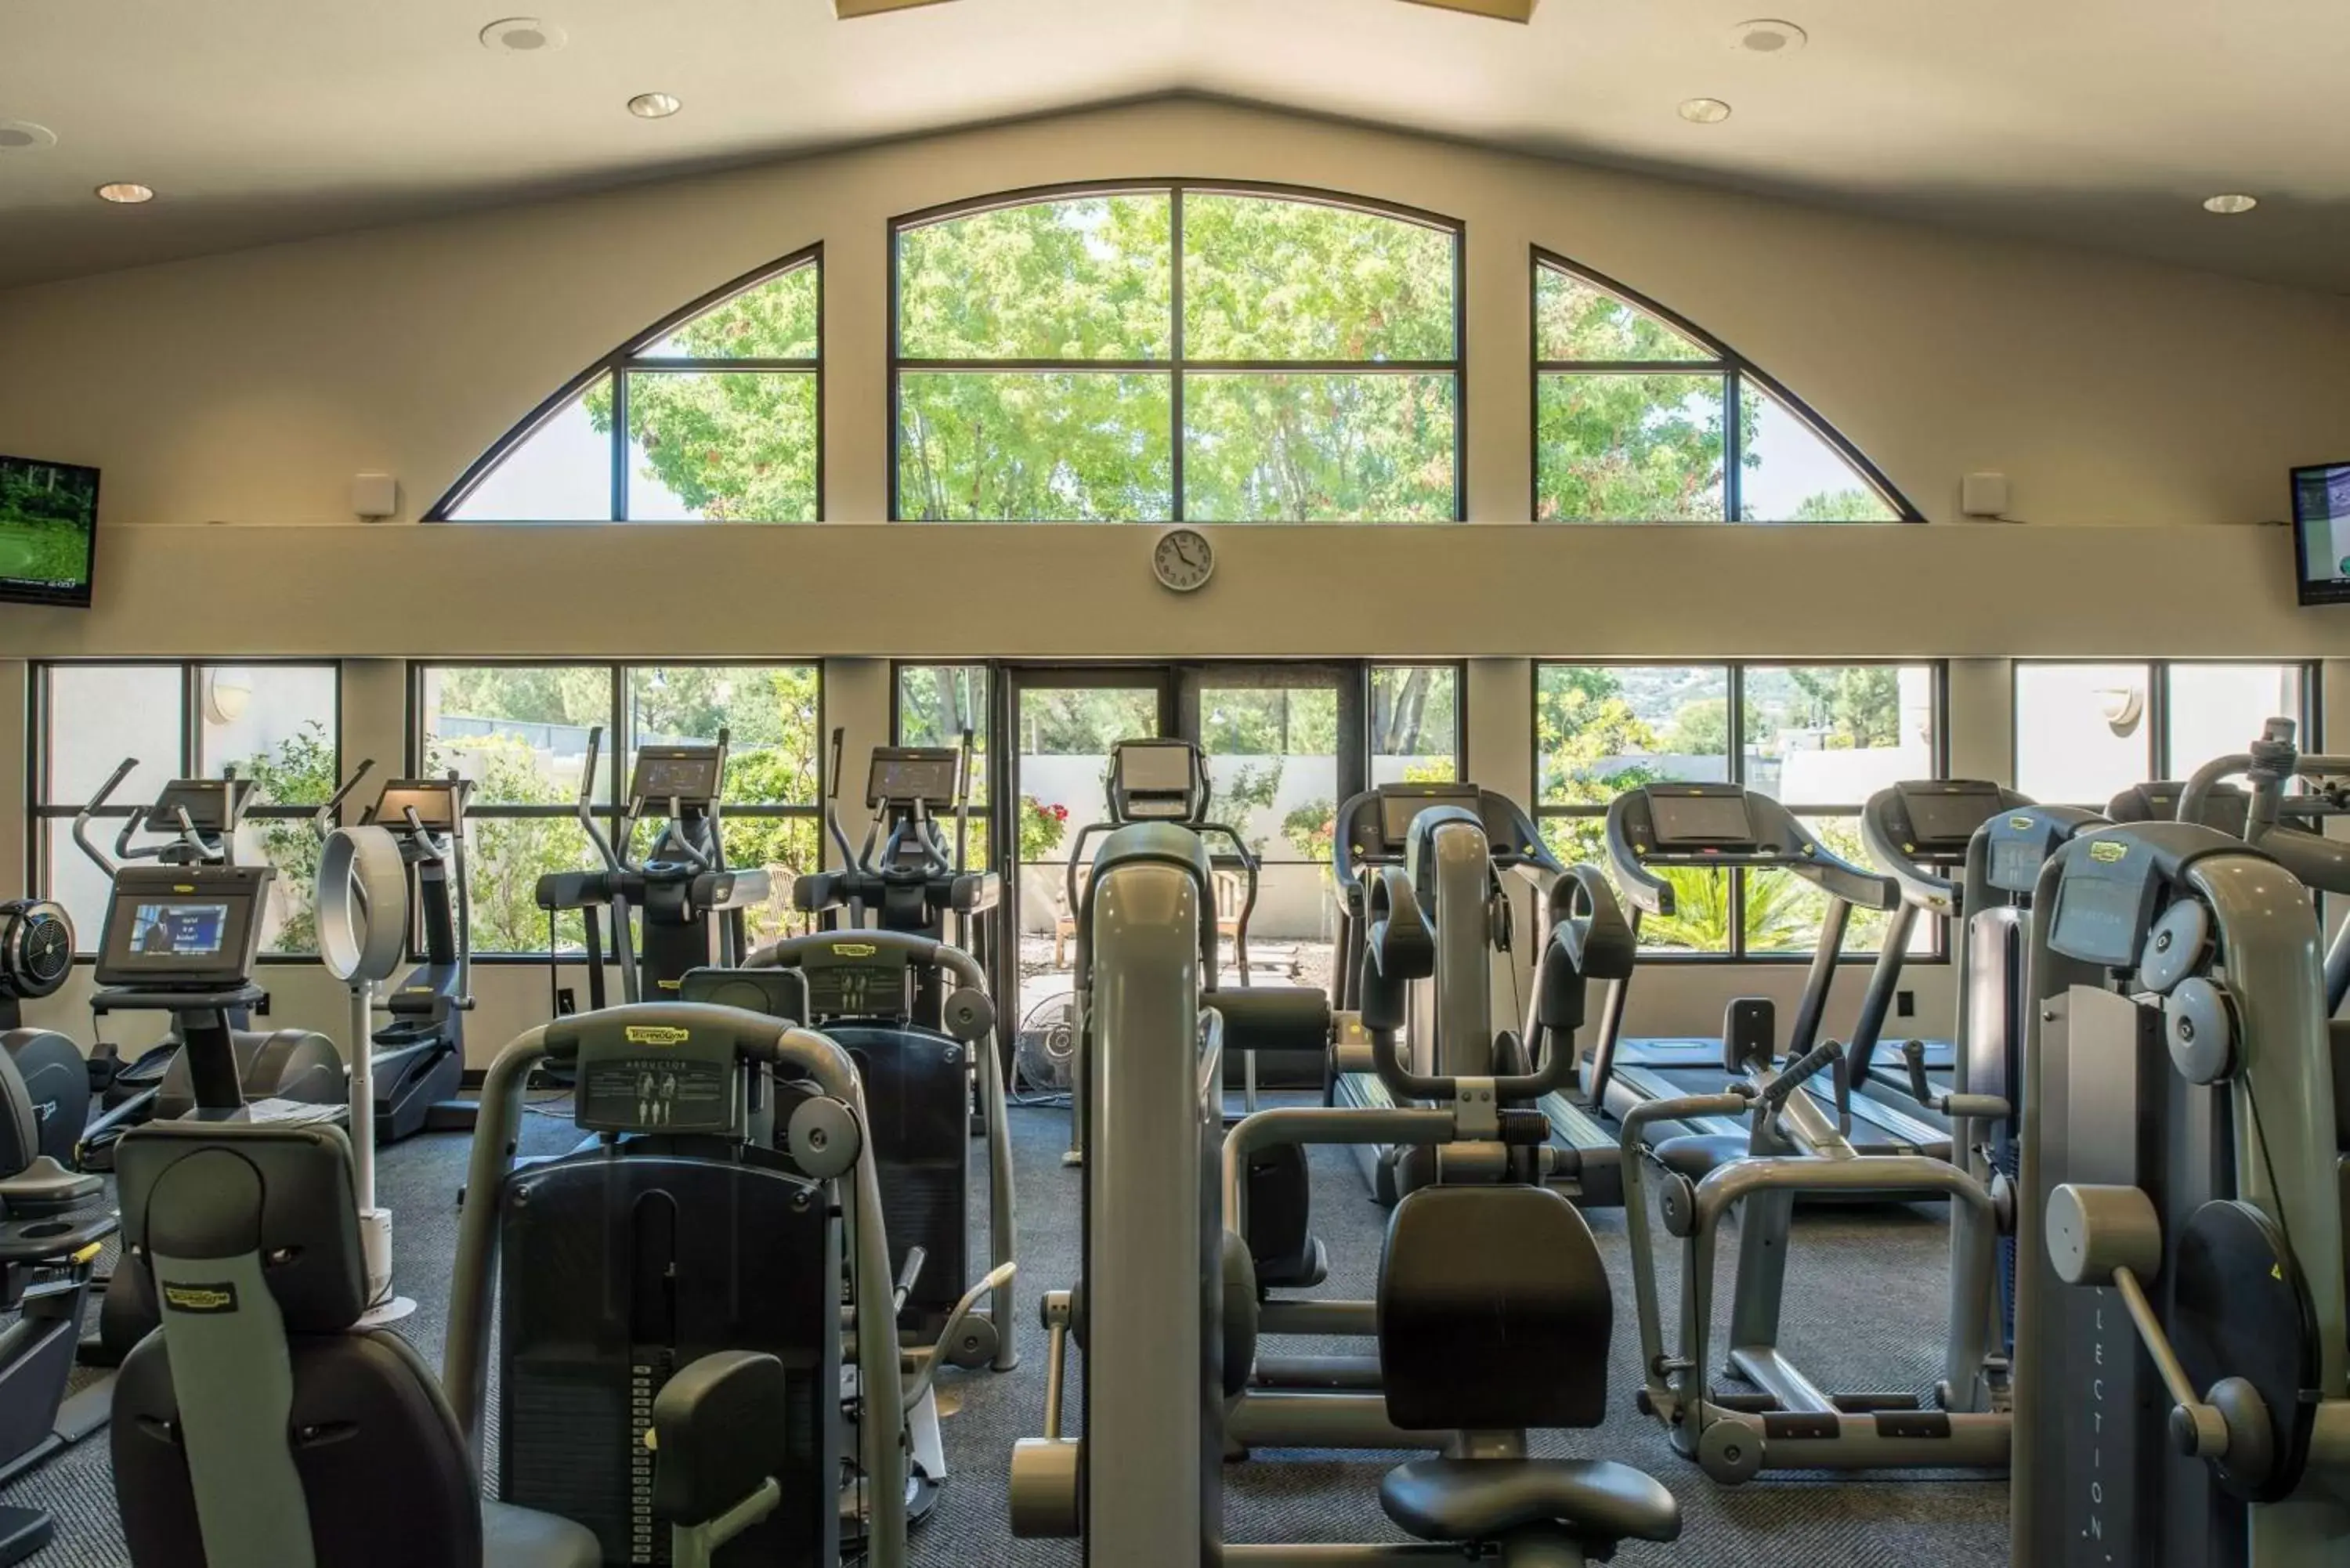 Fitness centre/facilities, Fitness Center/Facilities in Silverado Resort